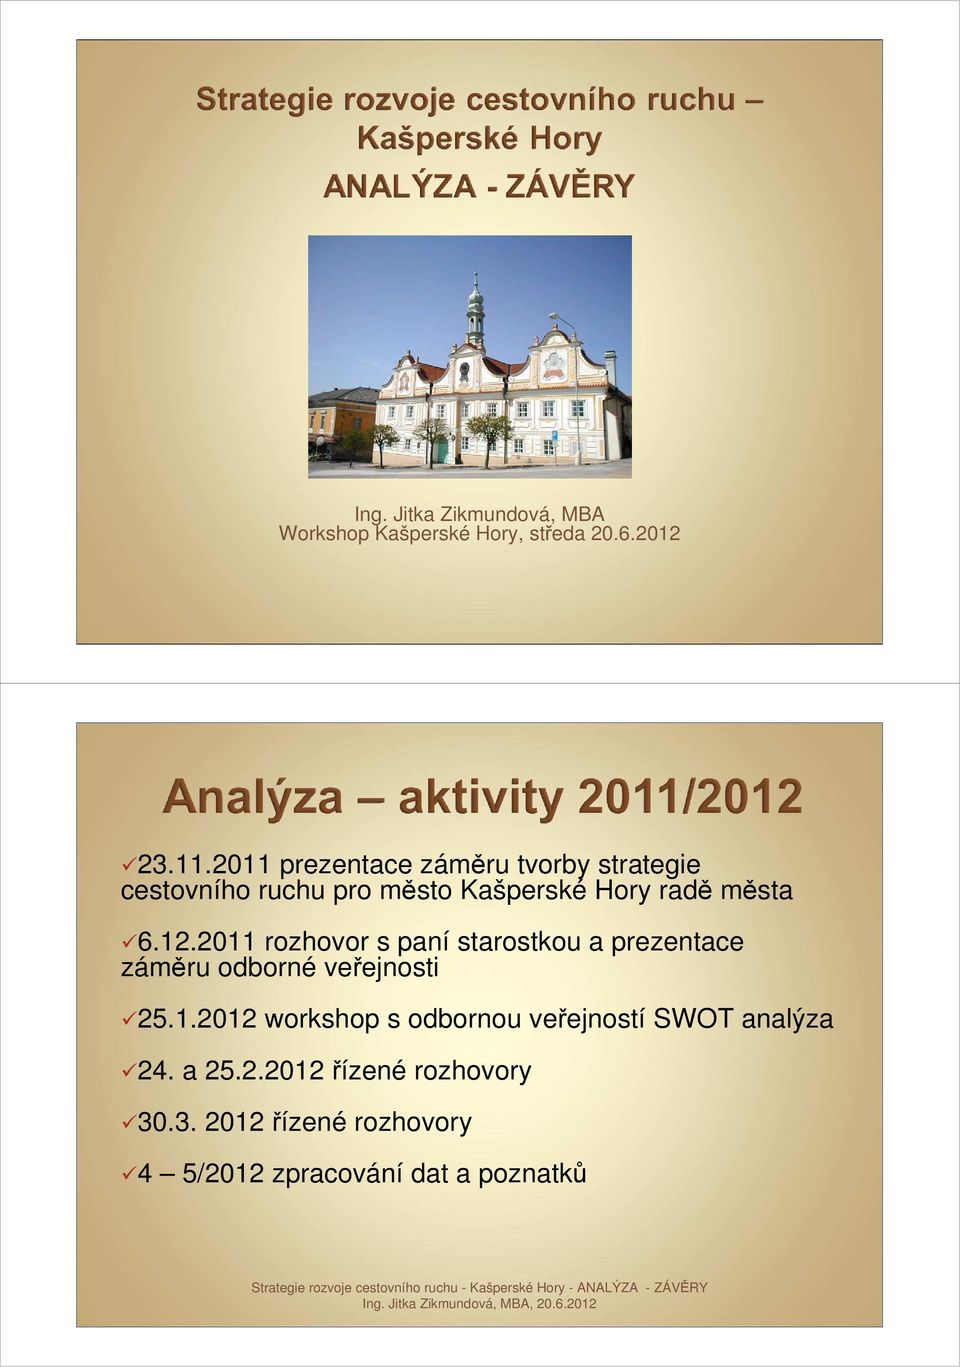 2011 rozhovor s paní starostkou a prezentace záměru odborné veřejnosti 25.1.2012 workshop s odbornou veřejností SWOT analýza 24.